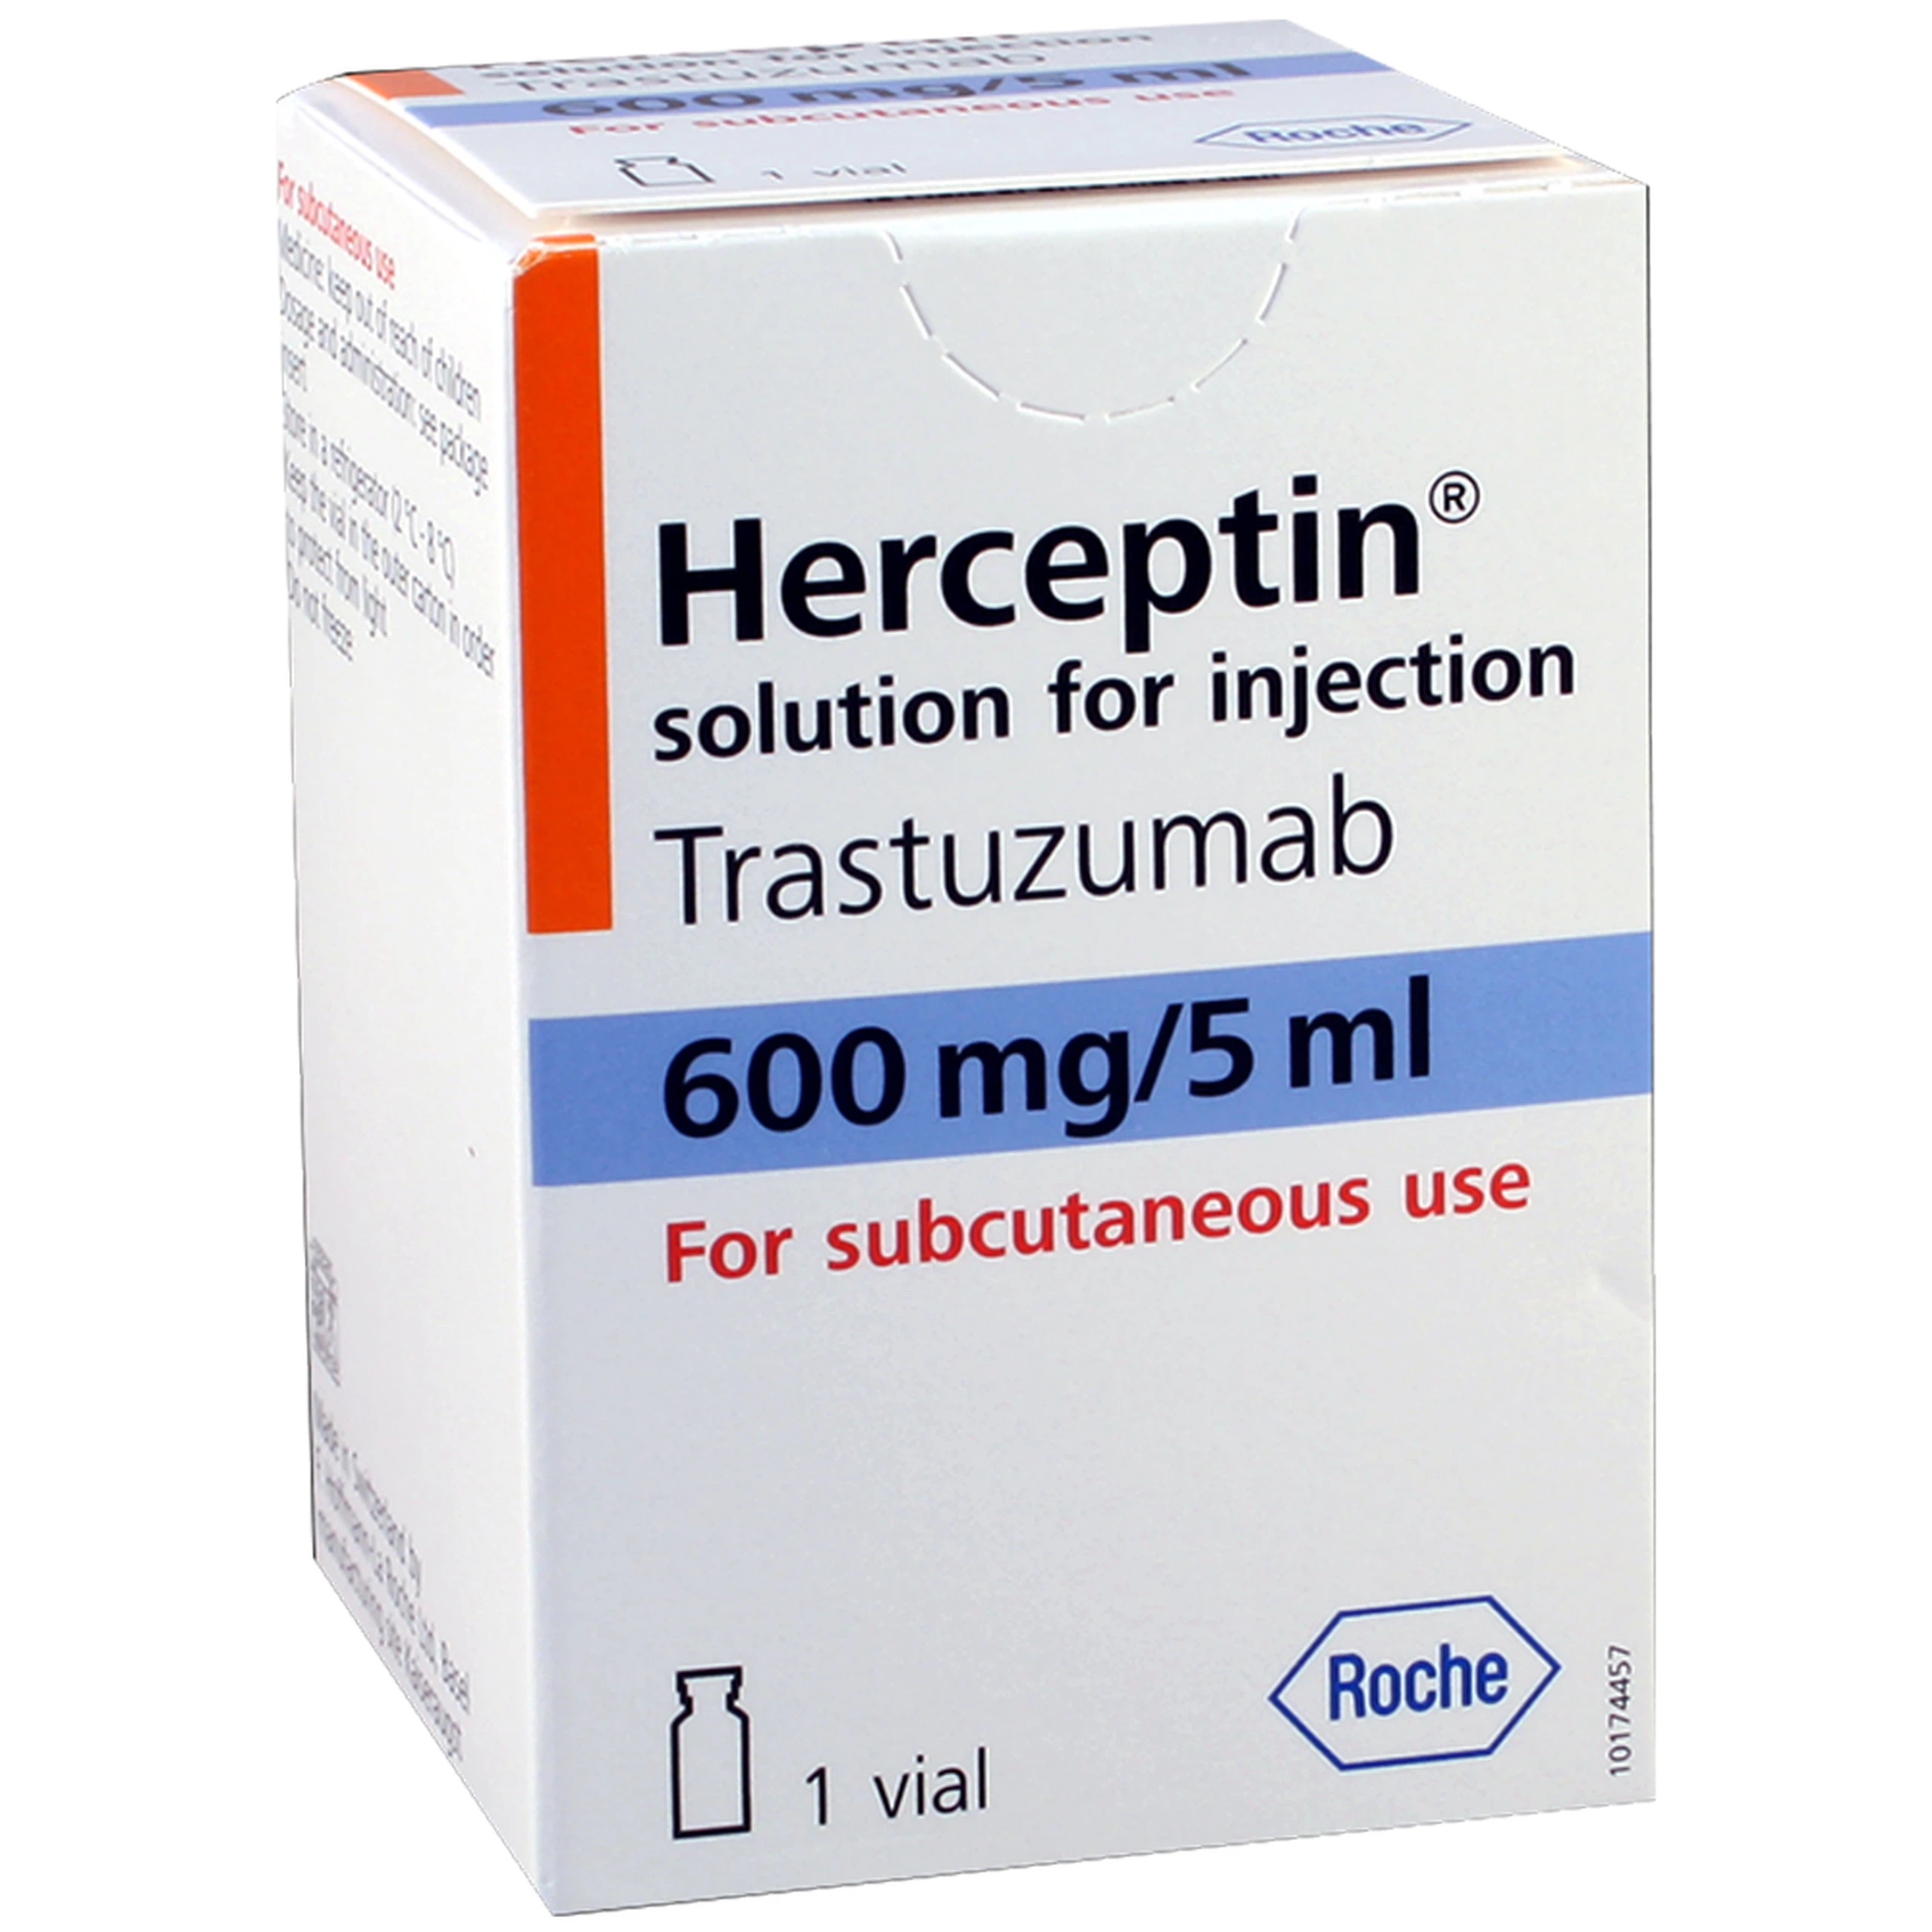 Thuốc Herceptin 600mg/5ml Roche điều trị ung thư vú sớm, ung thư vú tiến triển, ung thư dạ dày tiến triển